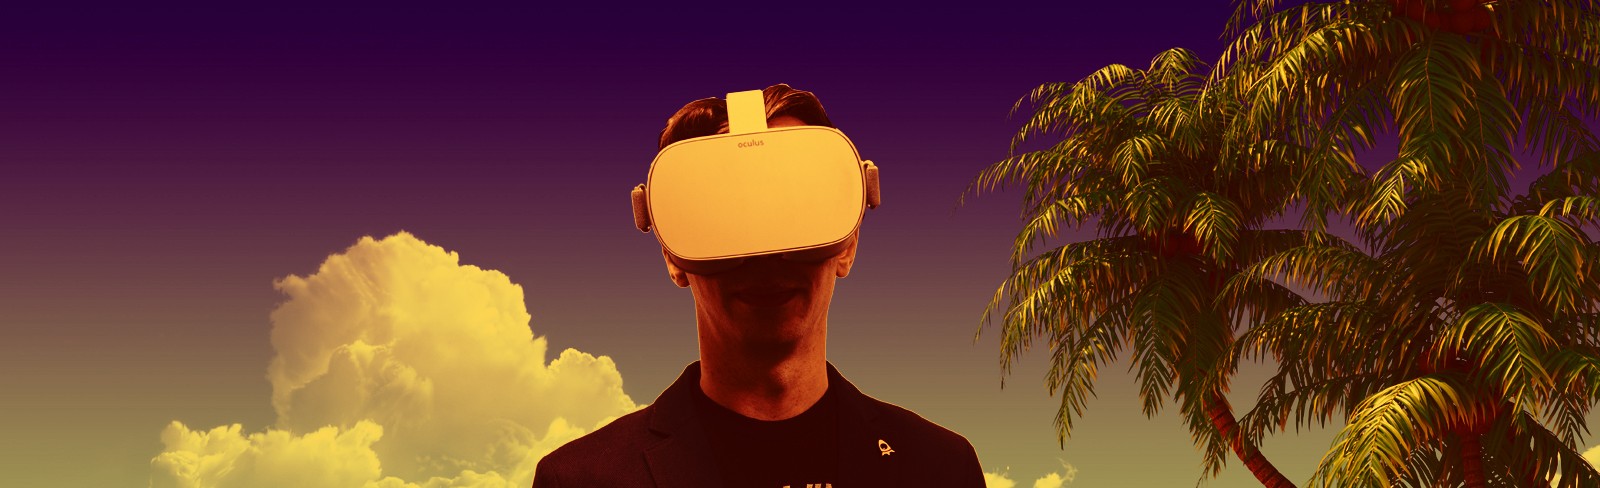 Виртуальное обучение и реальные навыки. Калужская компания занялась VR-технологиями